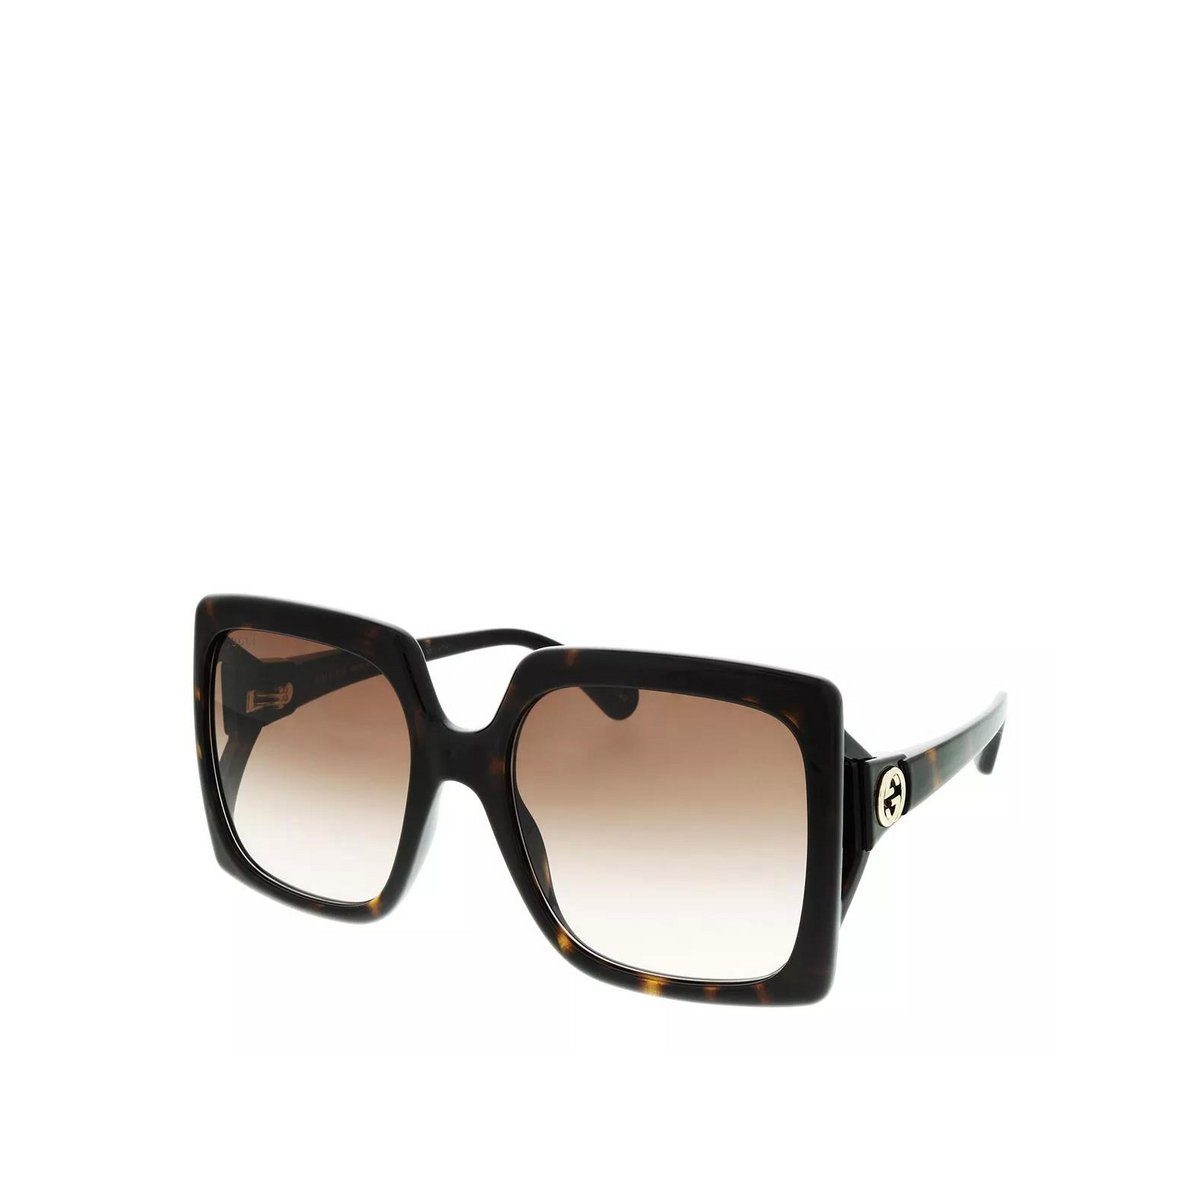 (1-St) GUCCI Sonnenbrille braun